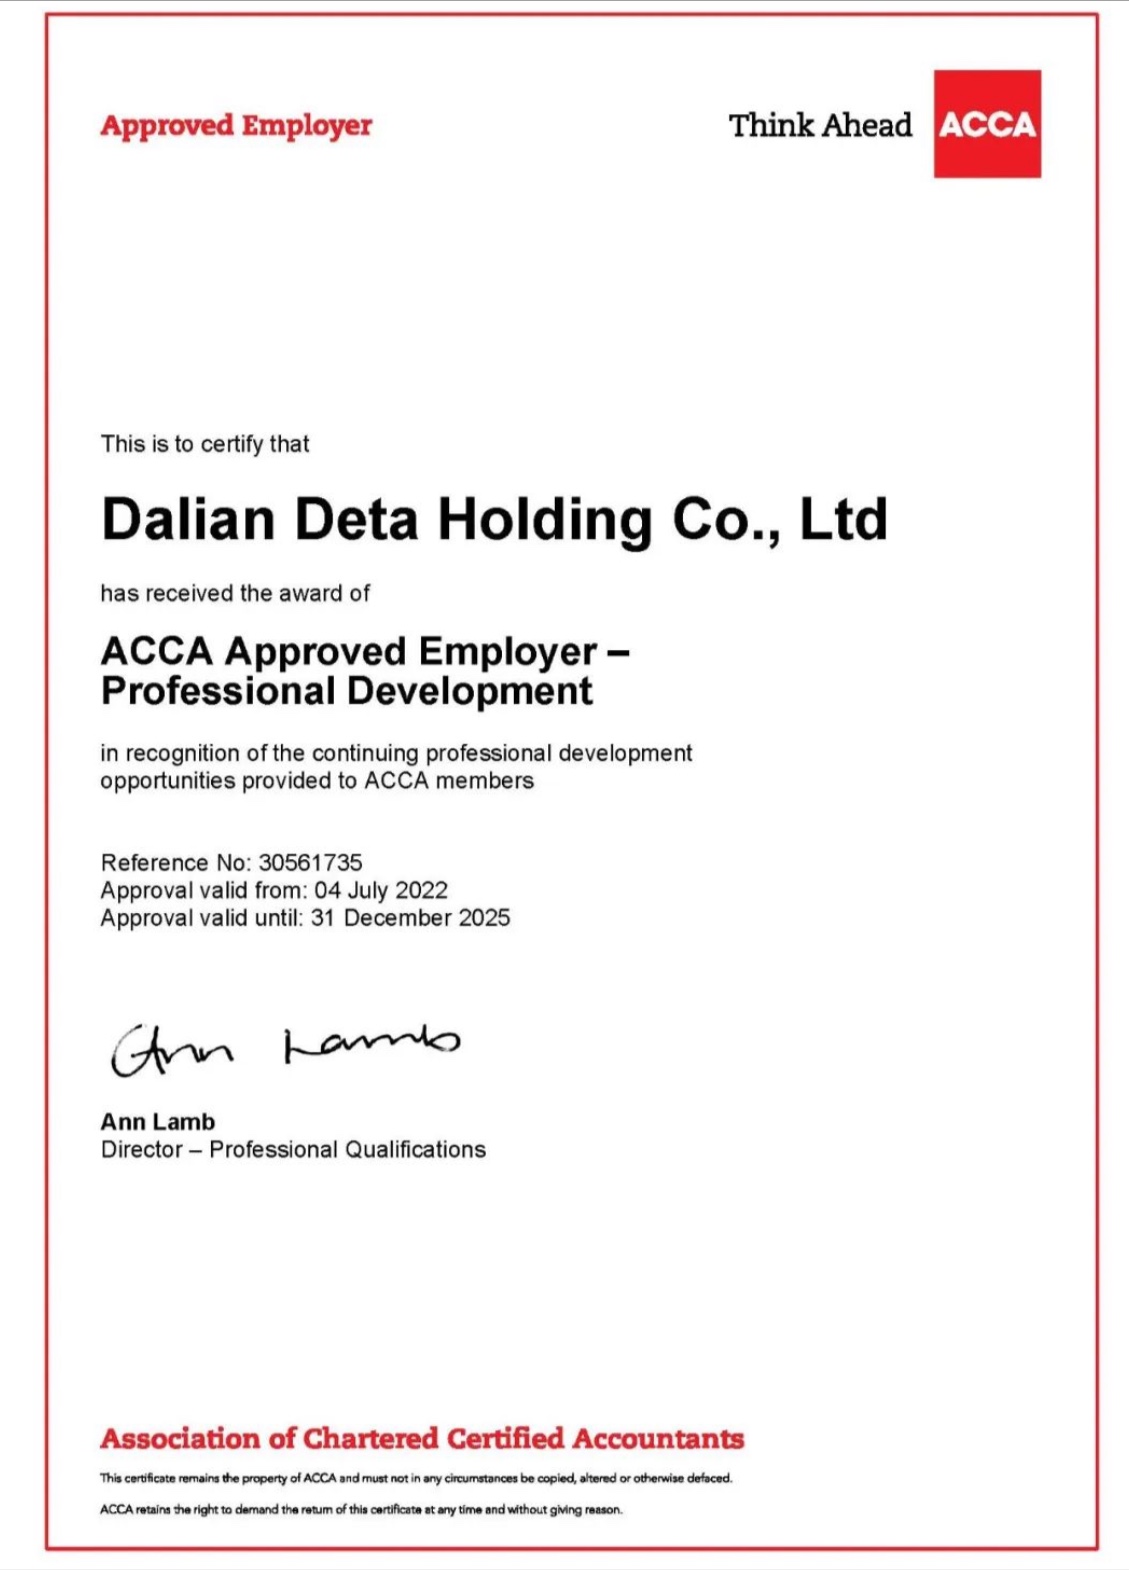 认可：大连德泰控股有限公司成为ACCA认可雇主